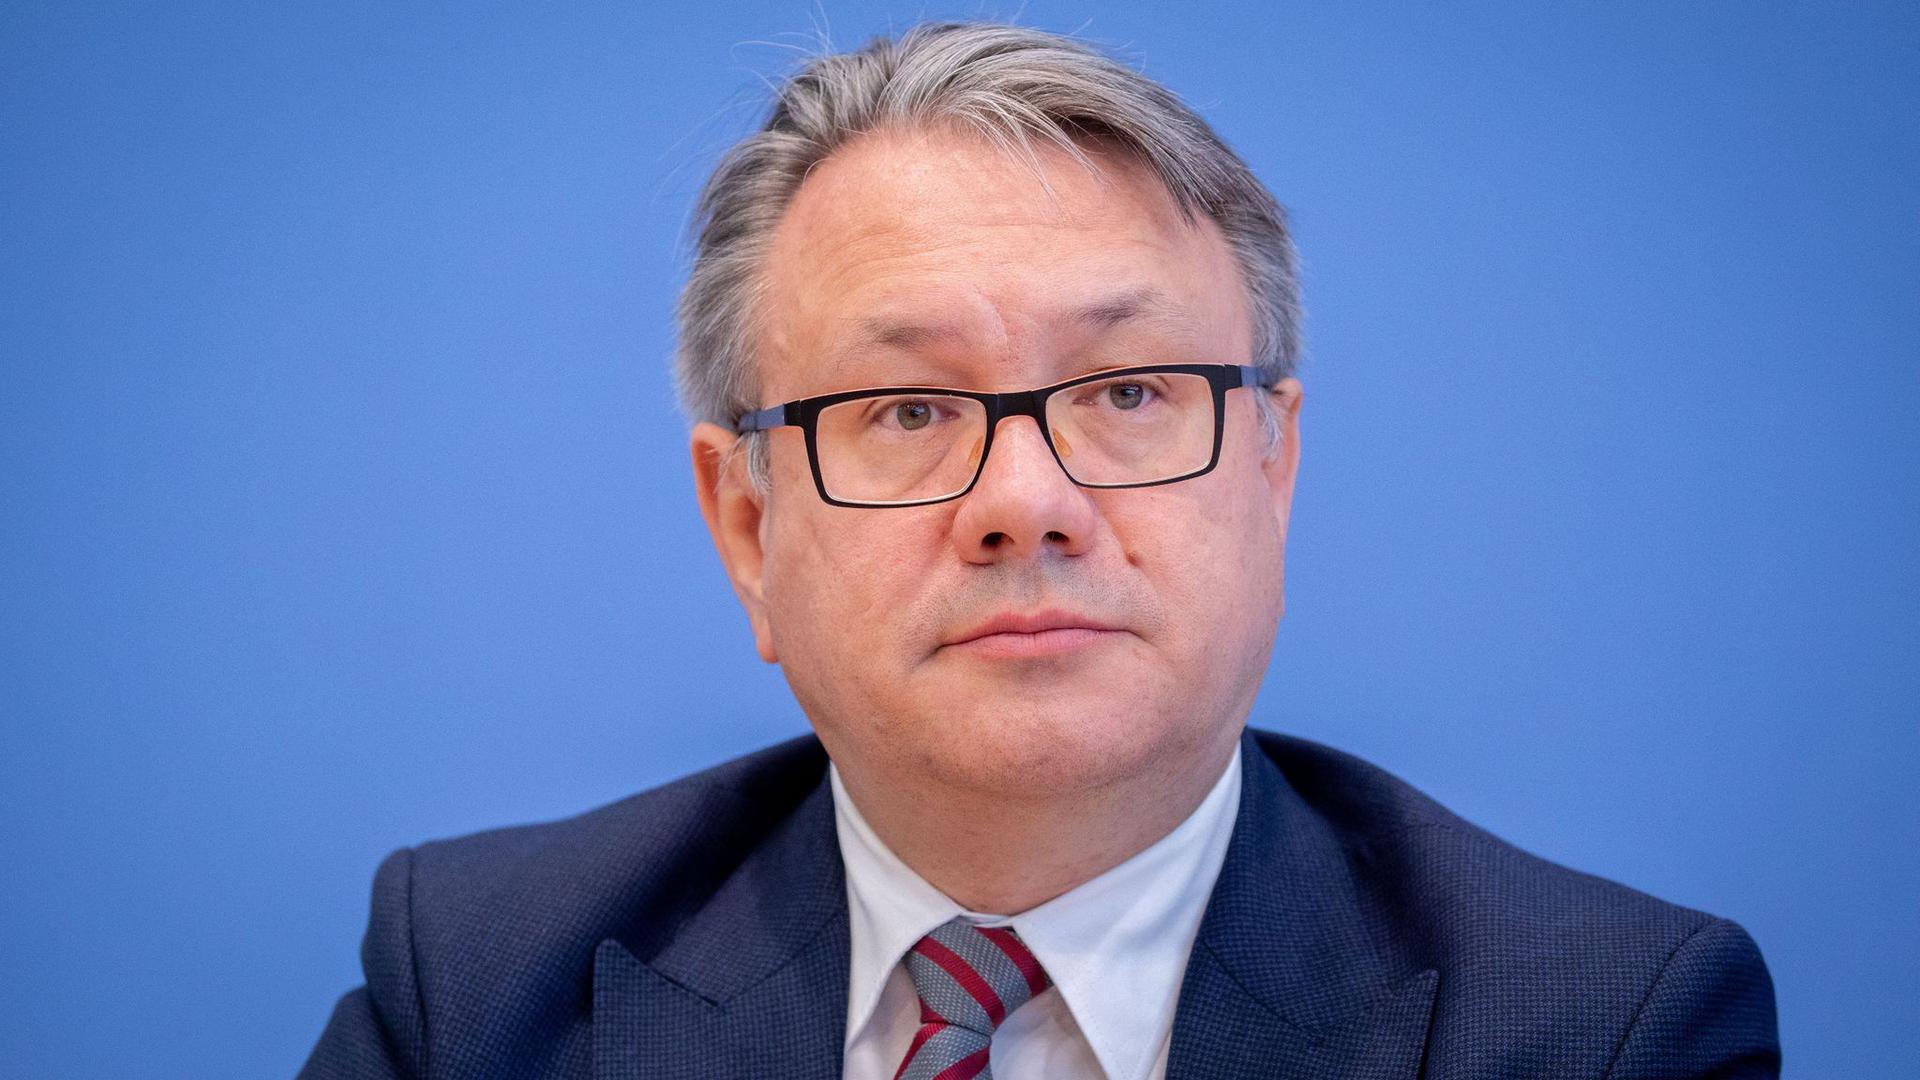 Der stellvertretende Vorsitzende der CDU/CSU-Bundestagsfraktion, Georg Nüßlein,  fordert den Corona-Lockdown nach Ende der bisherigen Befristung Mitte Februar definitiv zu beenden.